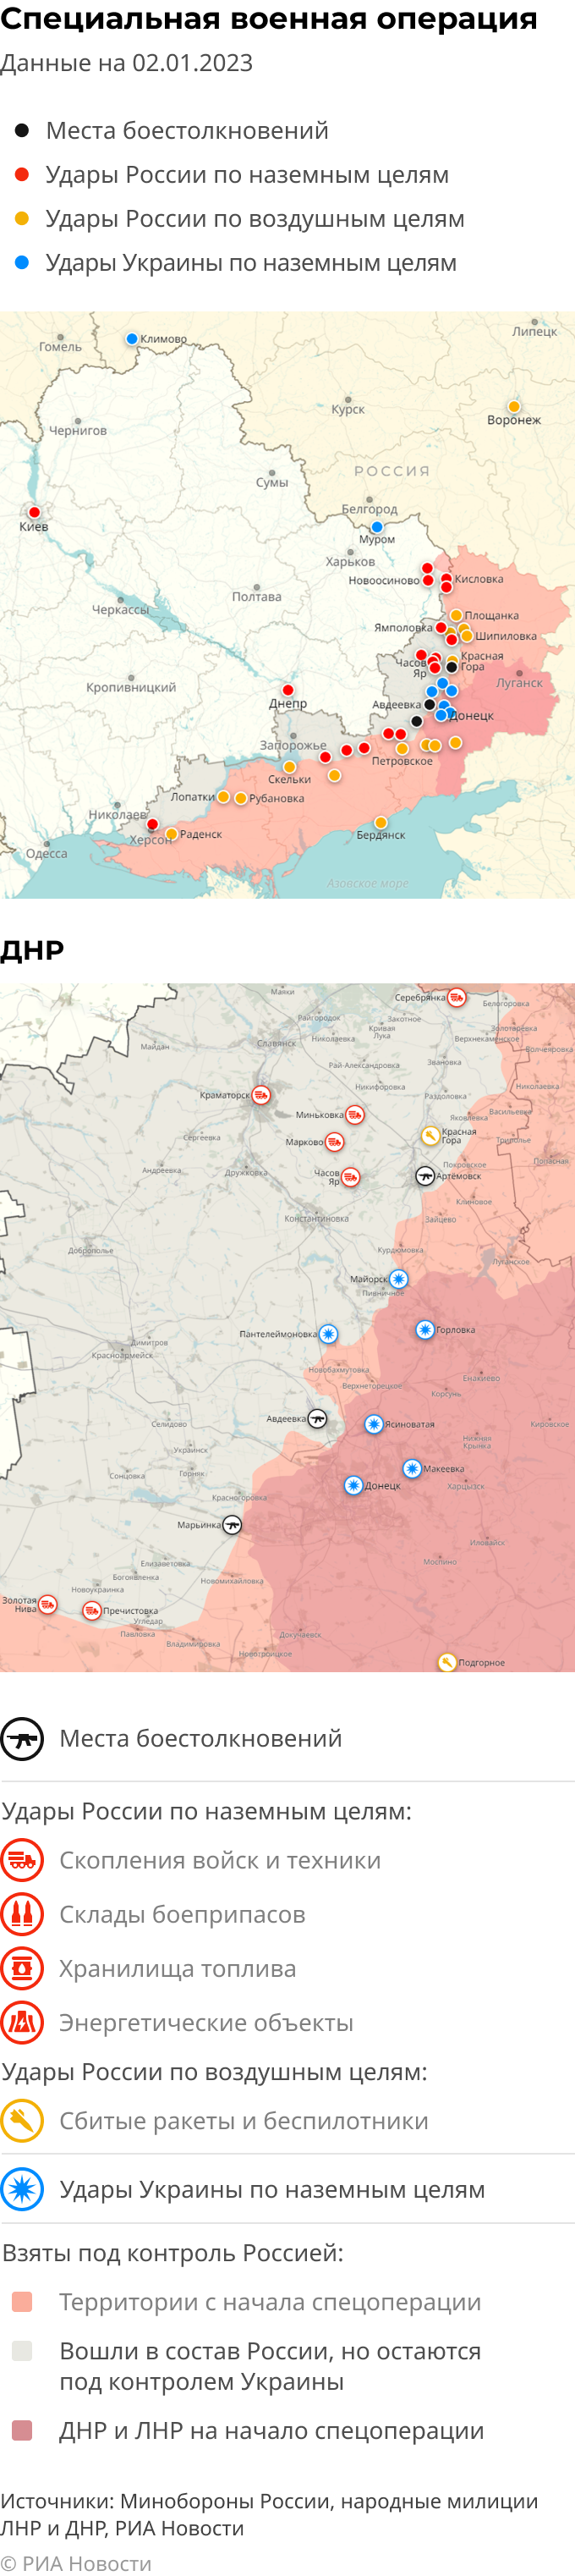 Карта спецоперации Вооруженных сил России на Украине на 02.01.2023